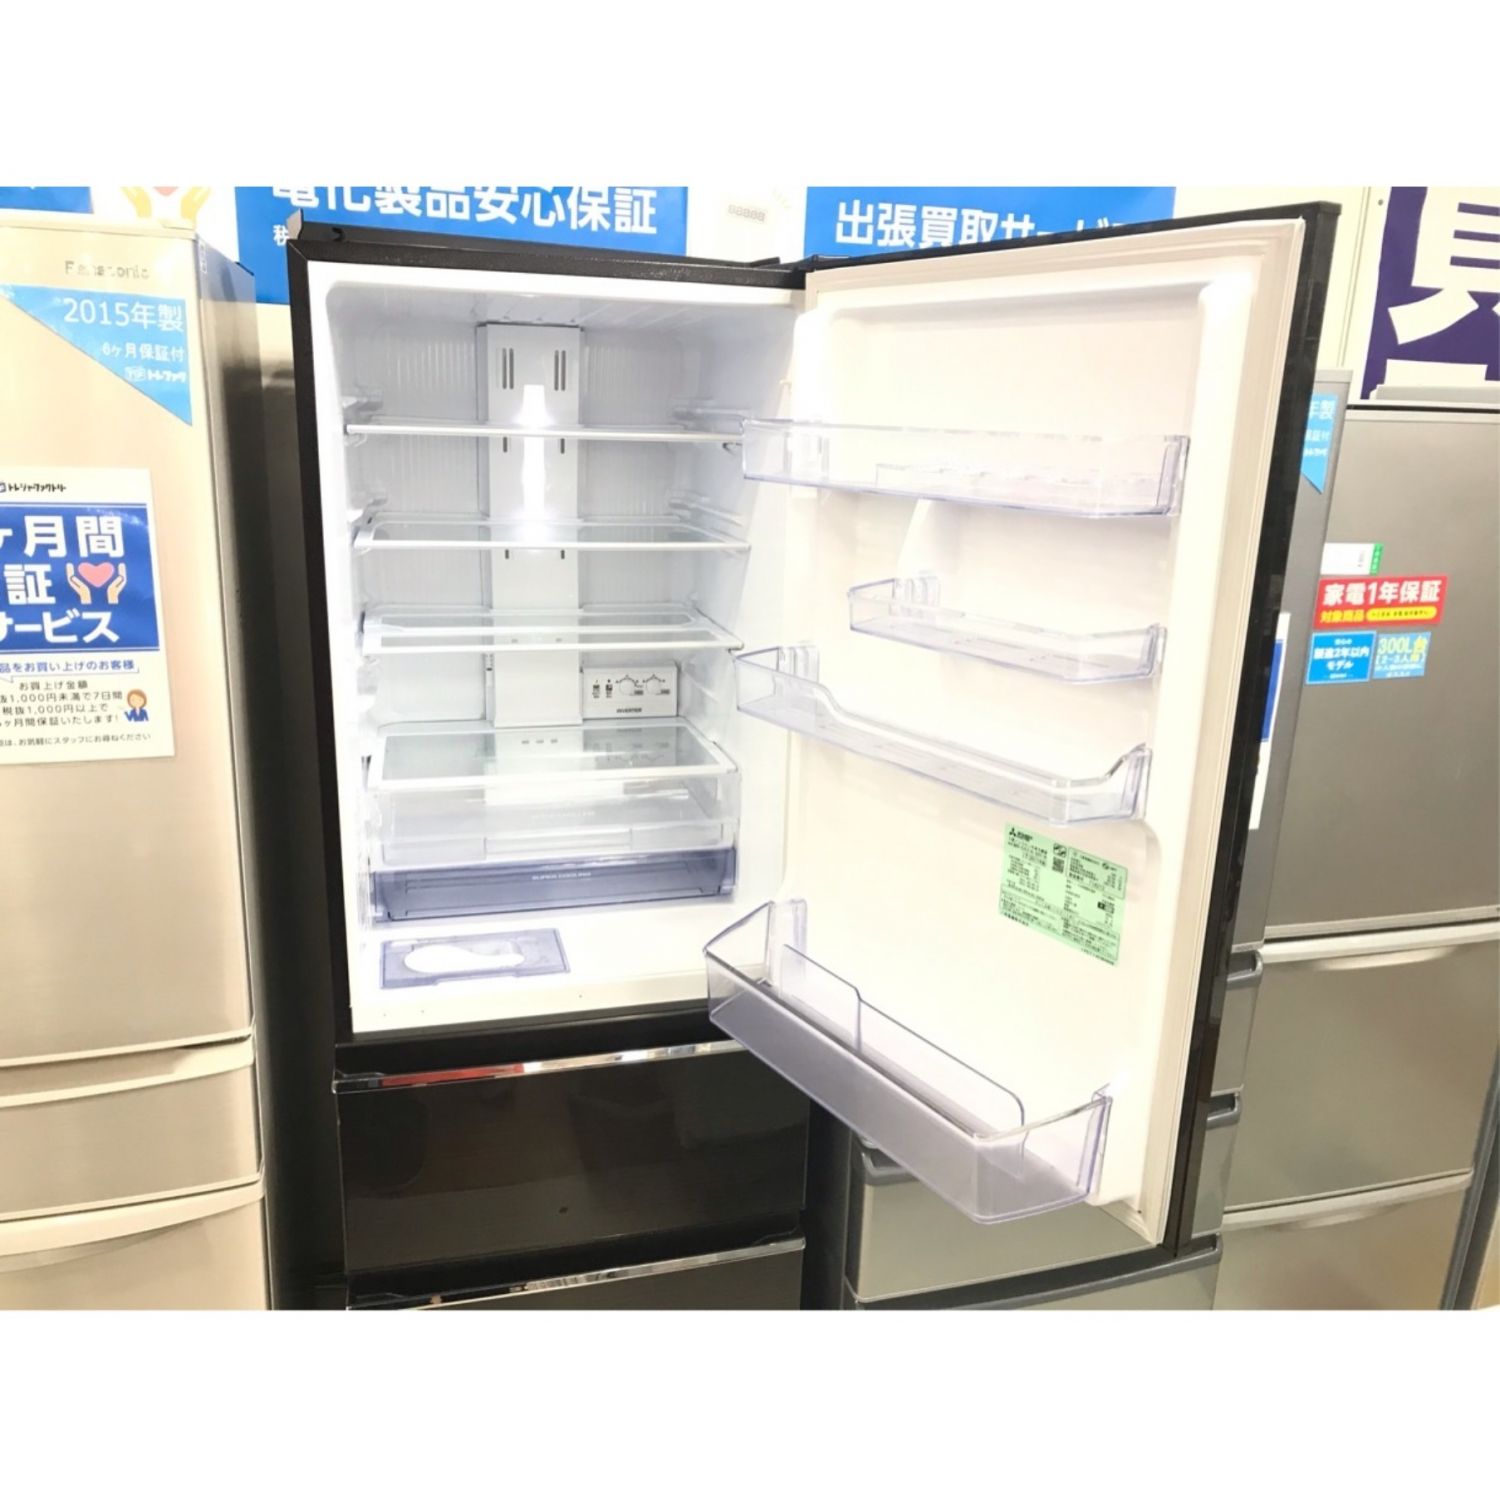 MITSUBISHI (ミツビシ) 3ドア冷蔵庫 MR-CX37A-BR1 2017年製 365L 